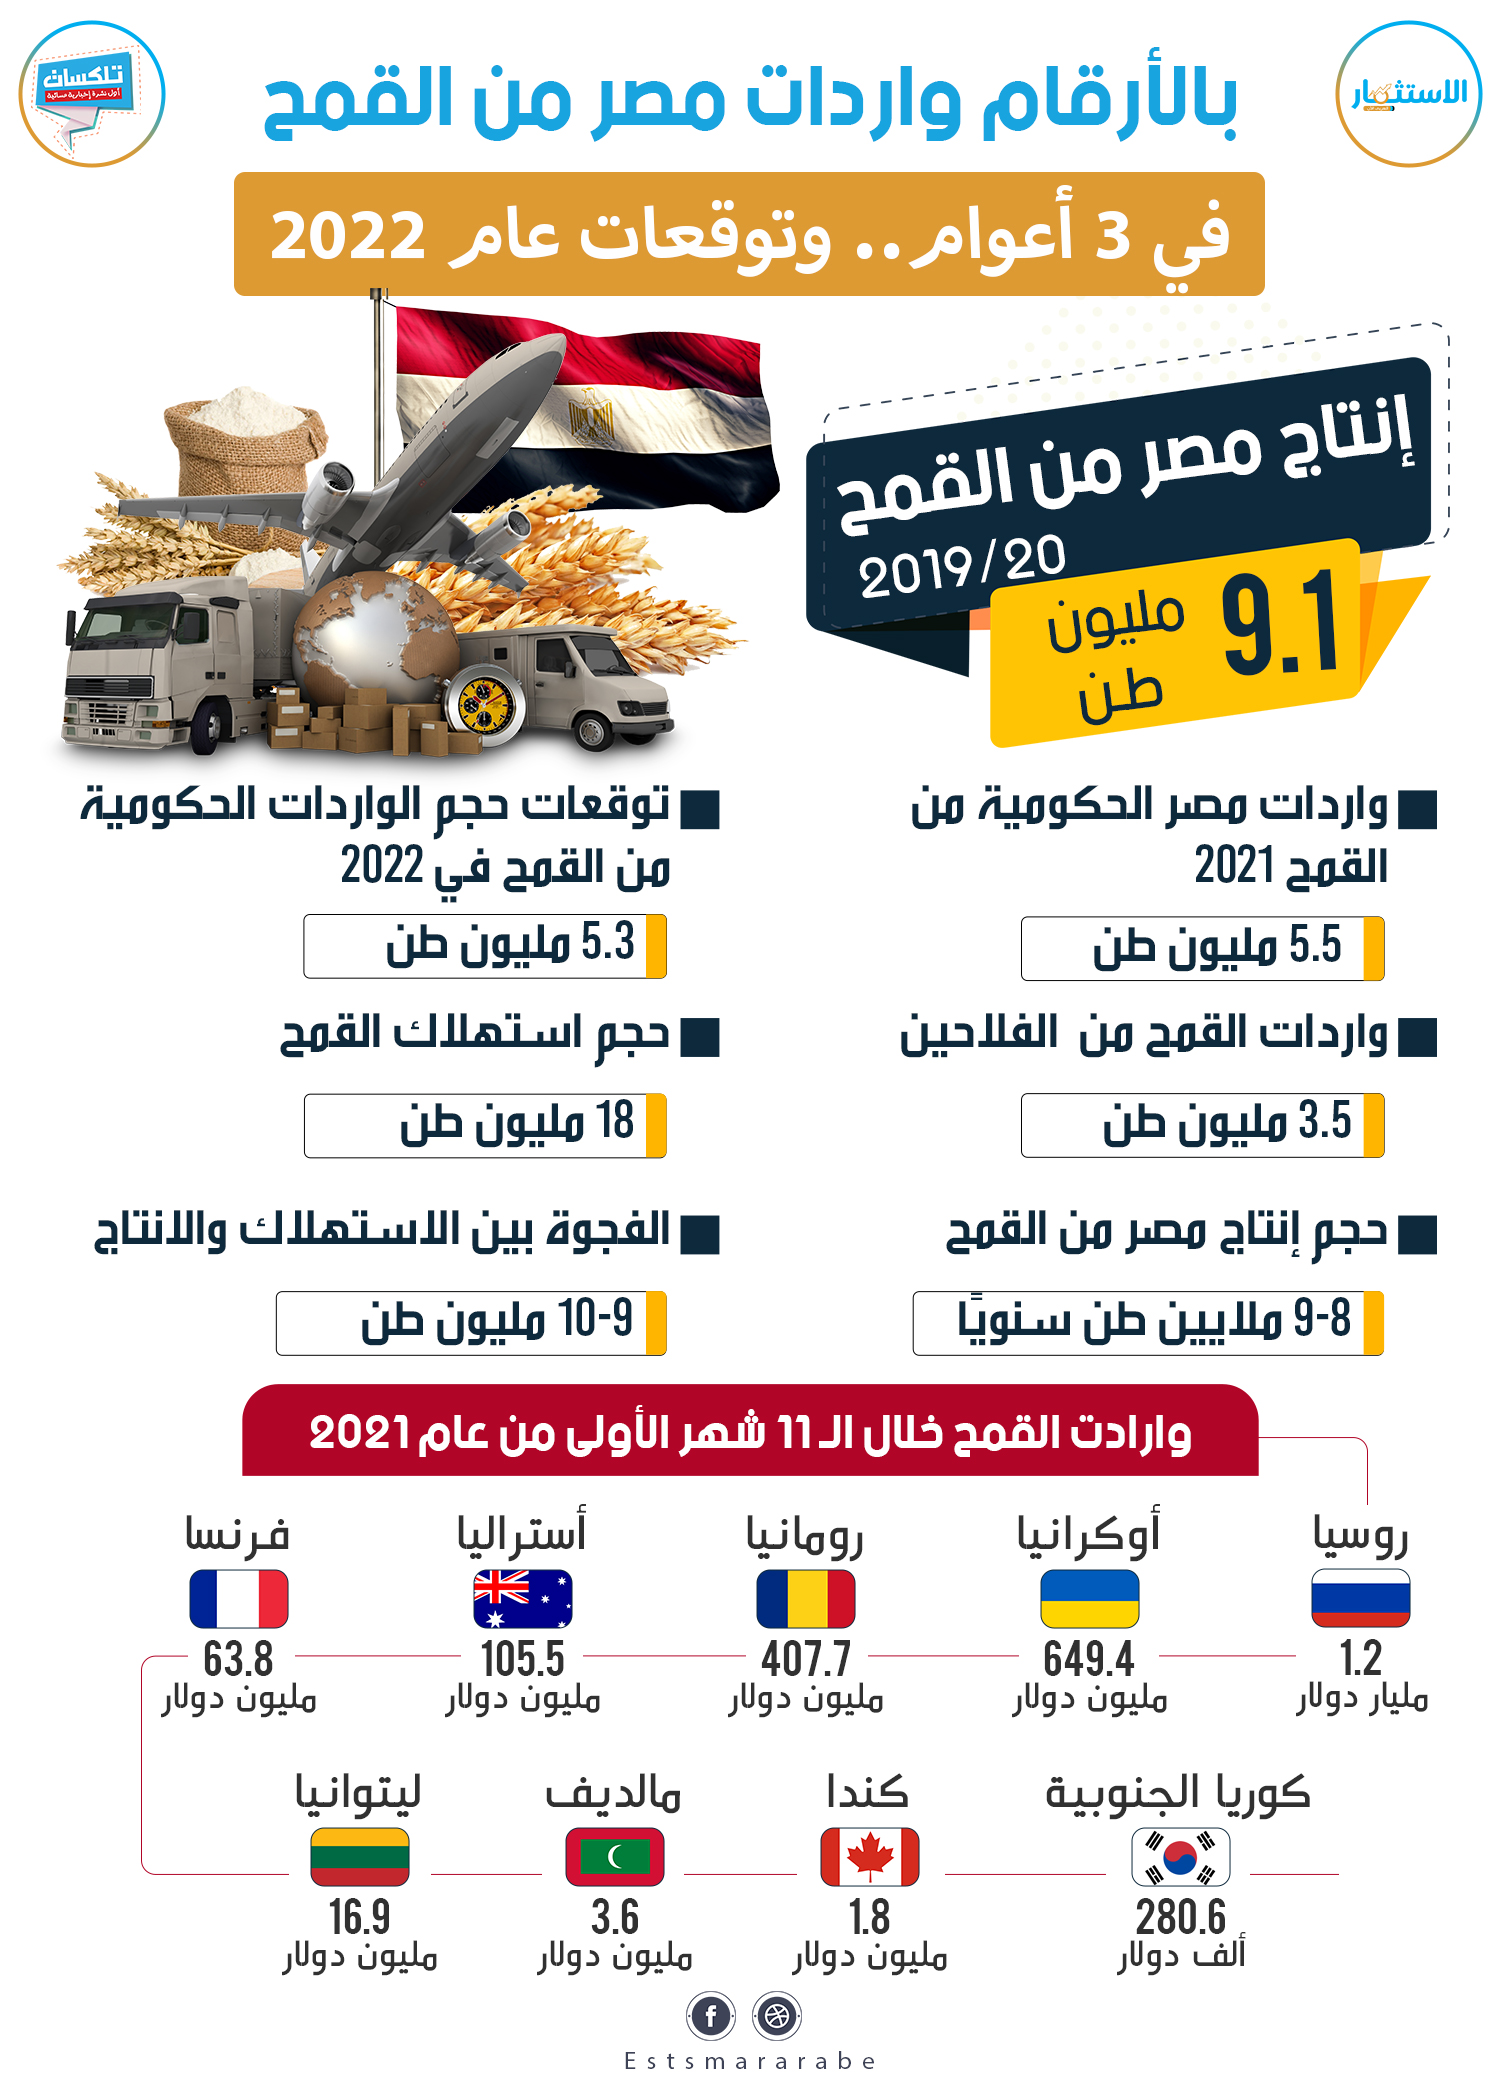 إنفوجرافيك || واردات مصر من القمح في 3 أعوام .. وتوقعات عام 2022